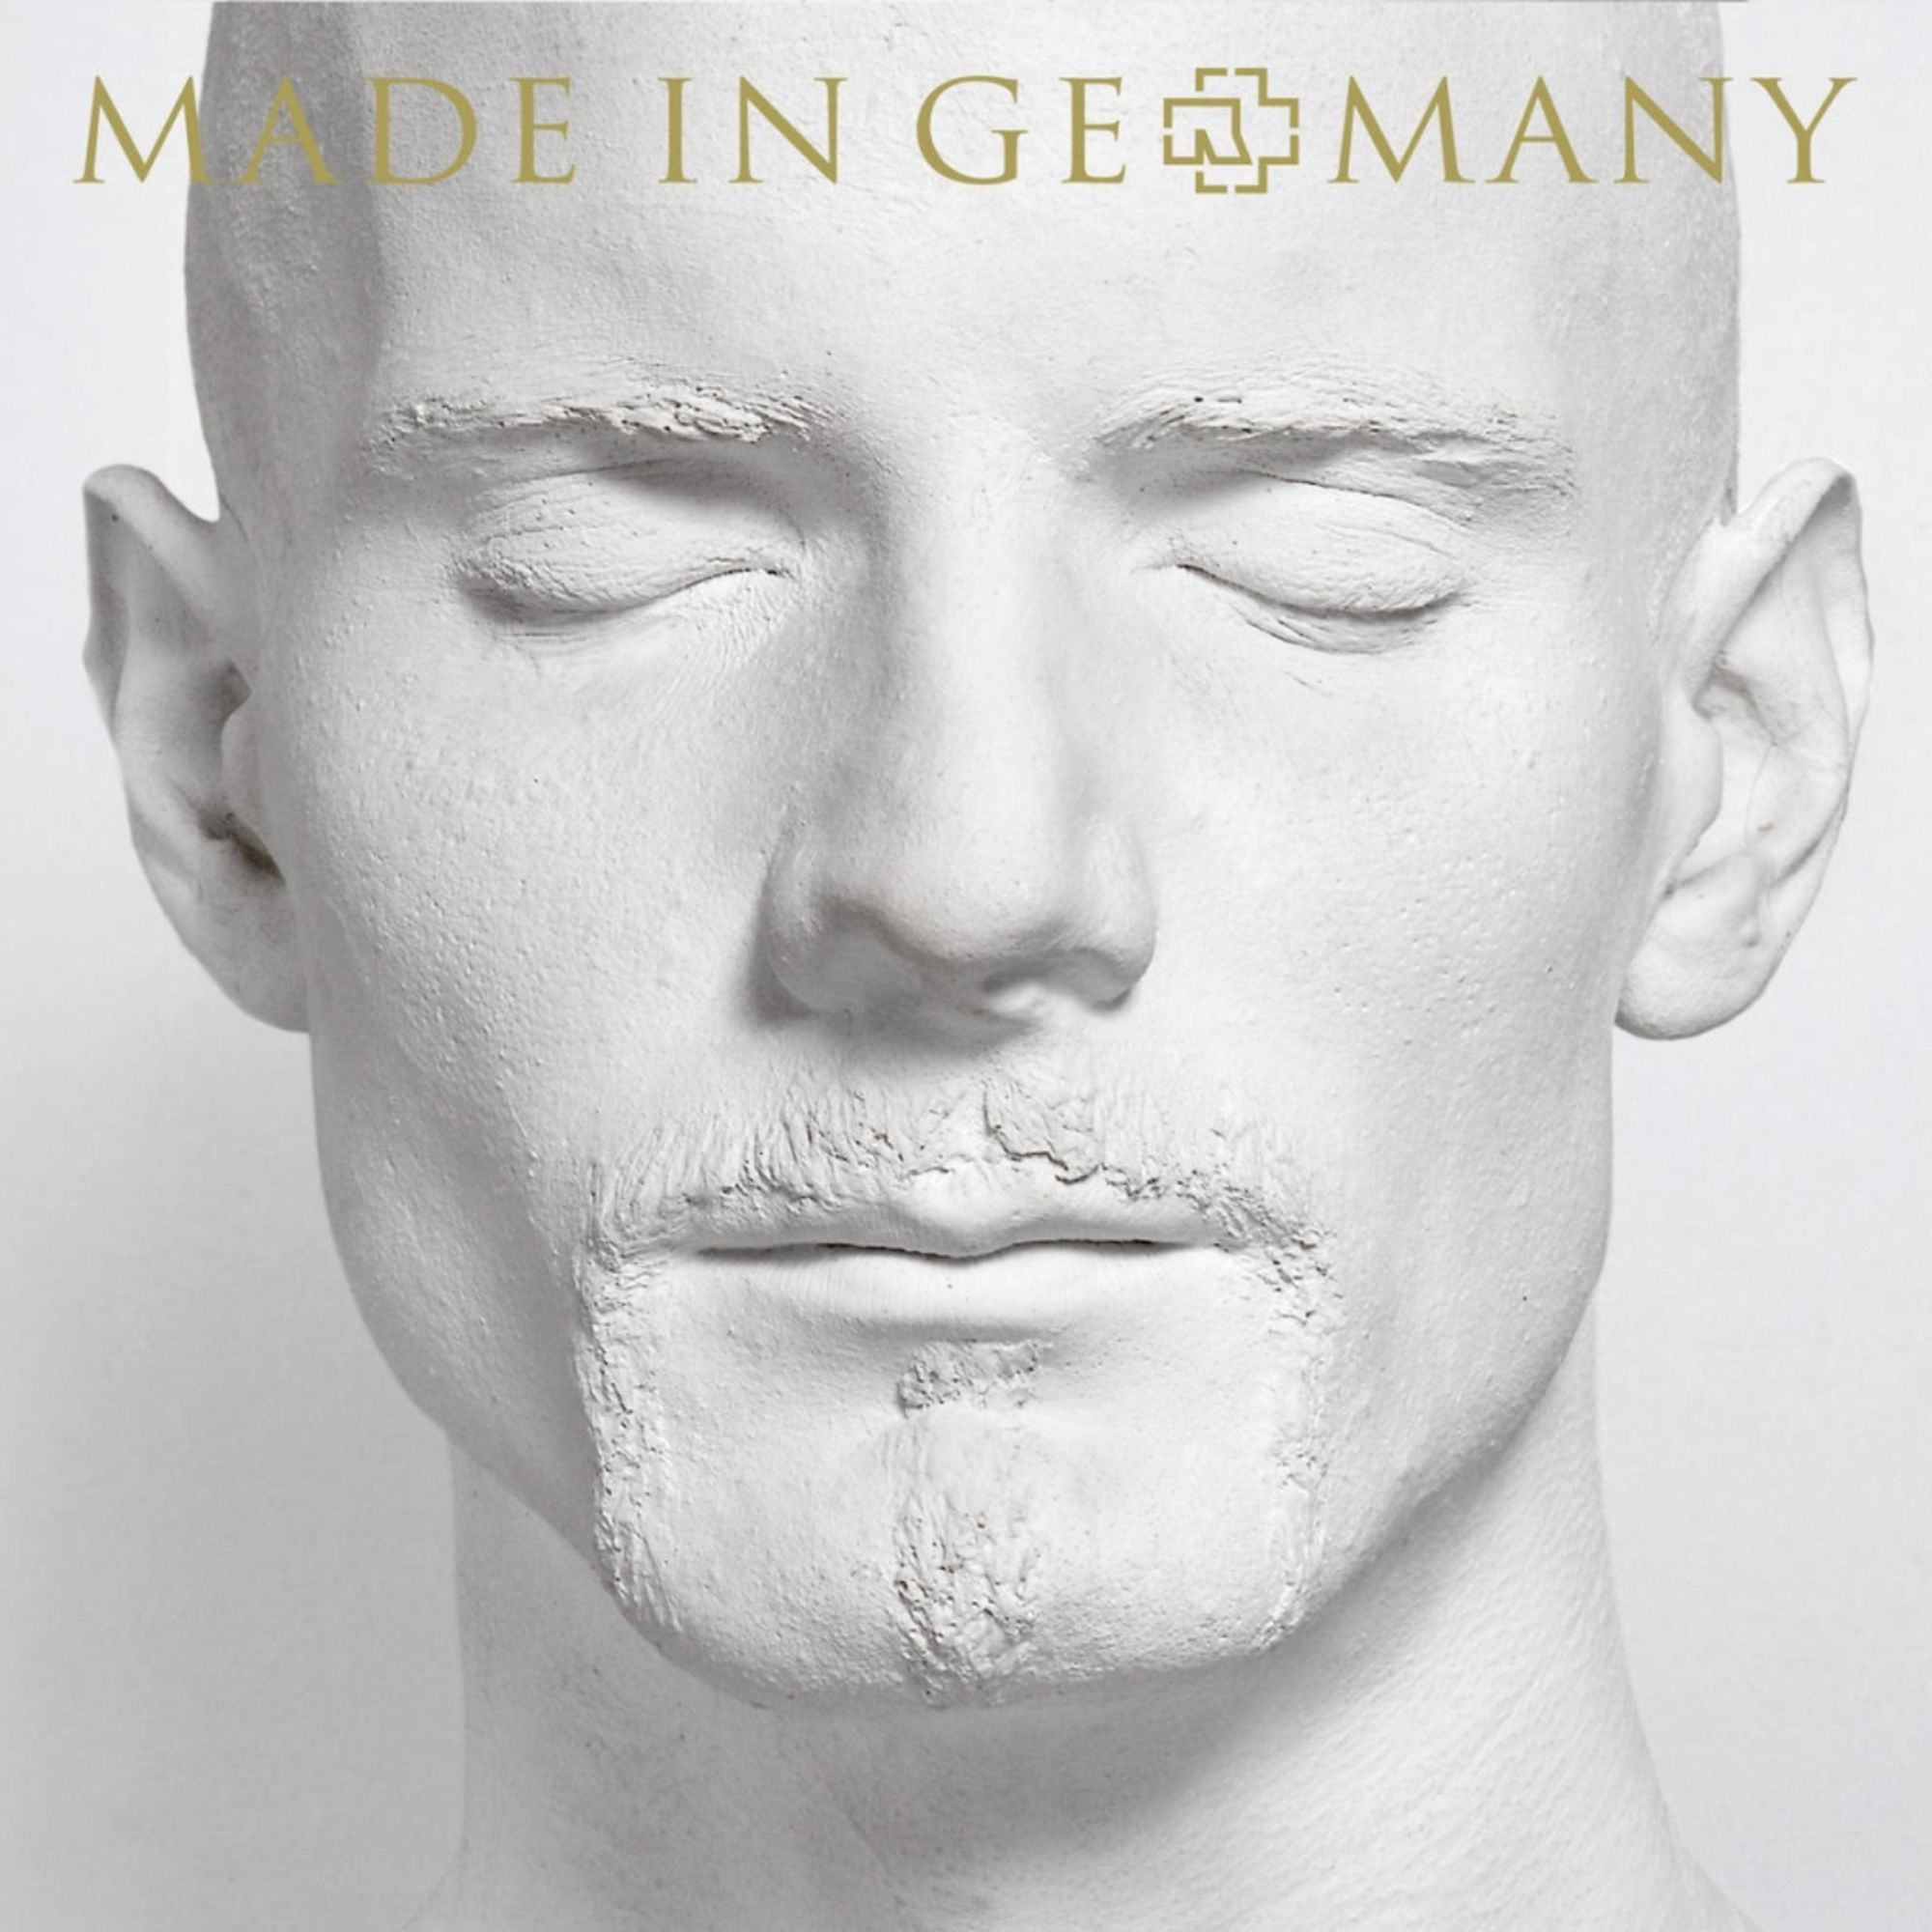 Made in Germany 1995-2011' von 'Rammstein' auf 'CD' - Musik